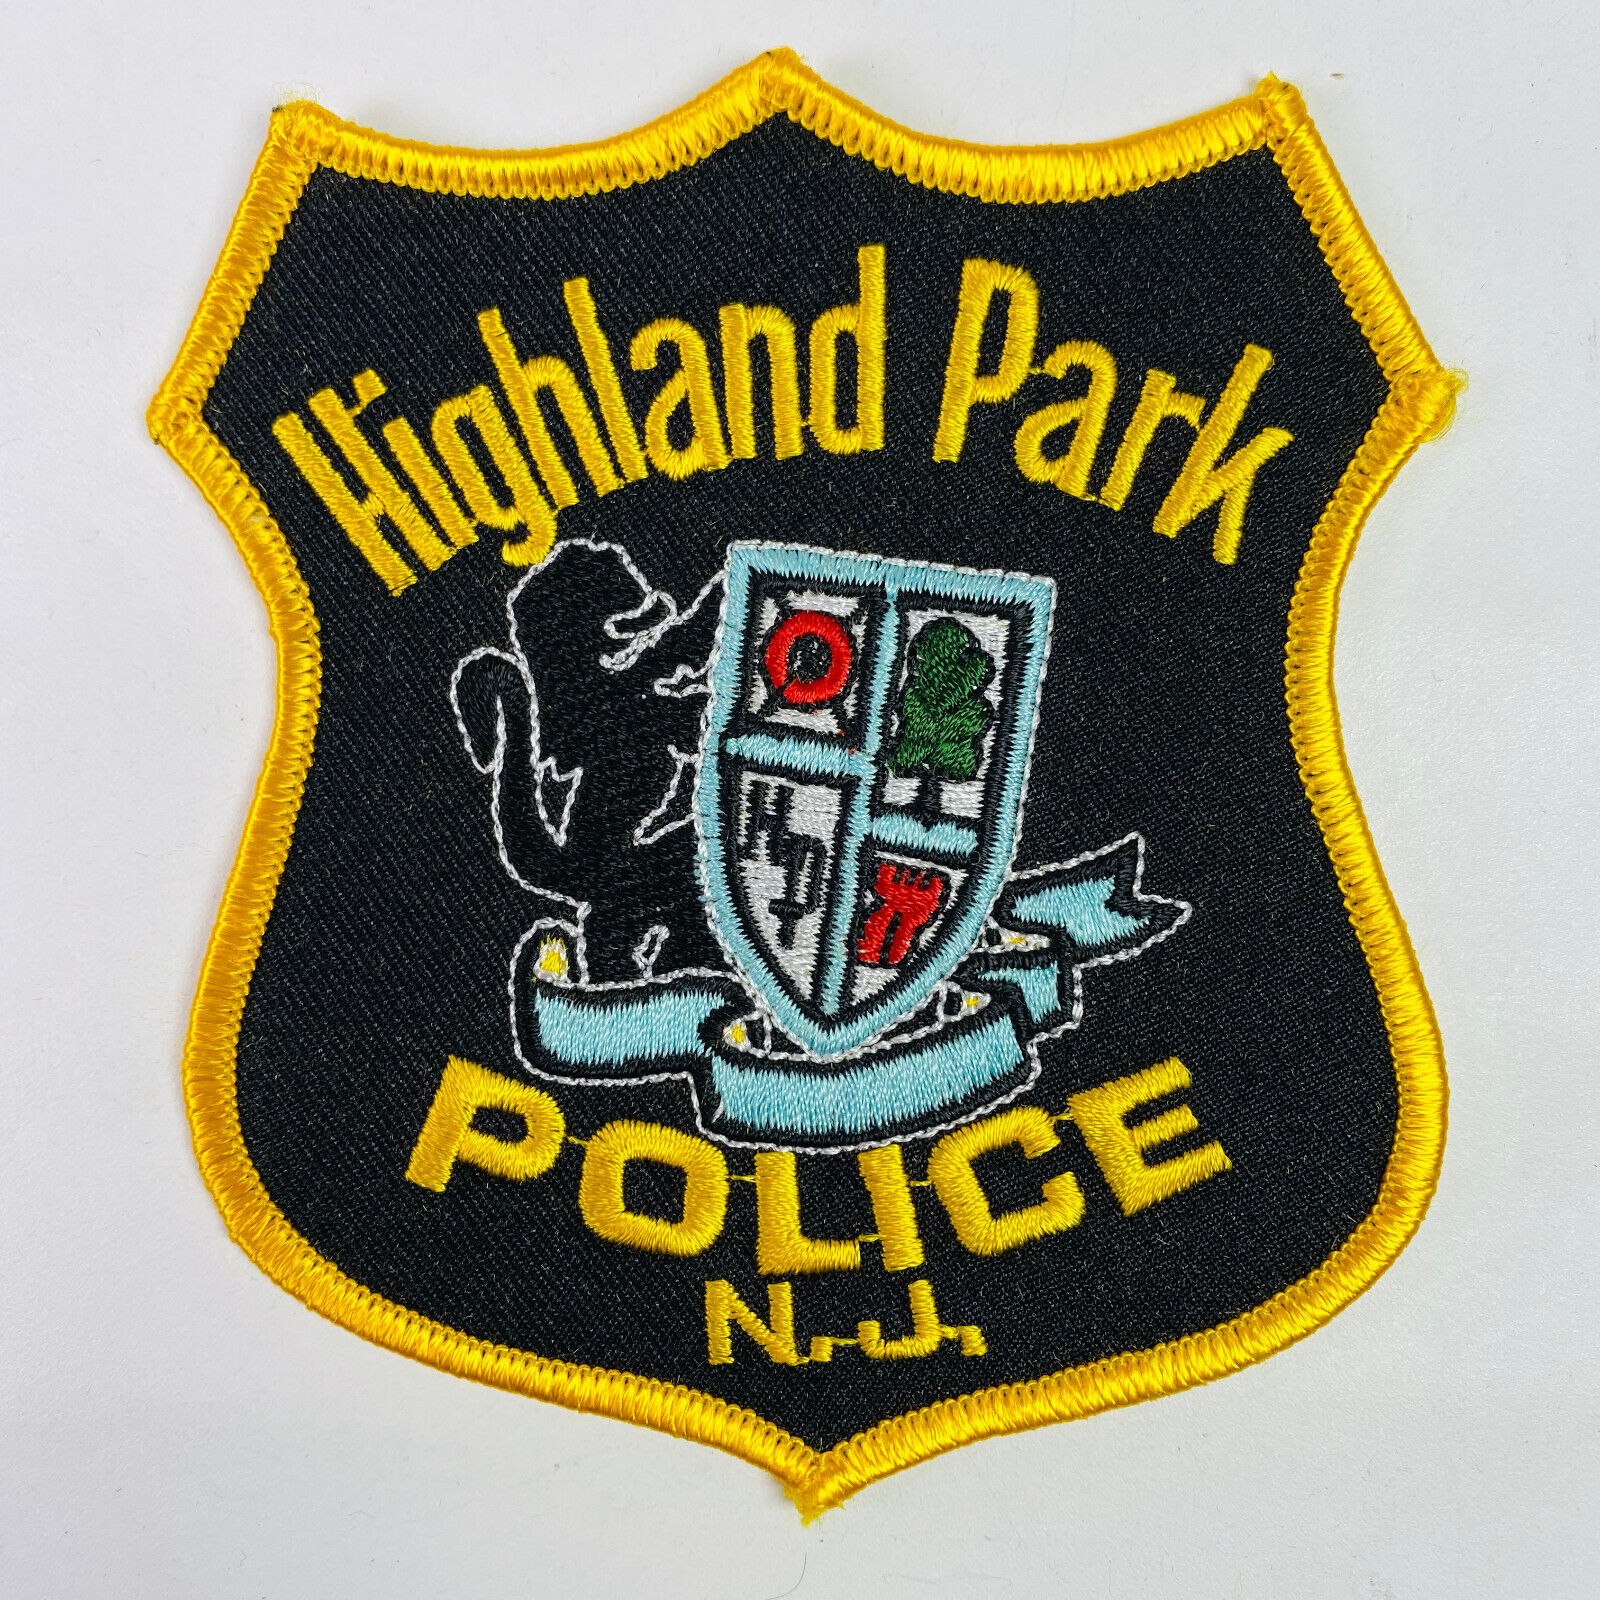 Highland Park Police New Jersey NJ Patch B3